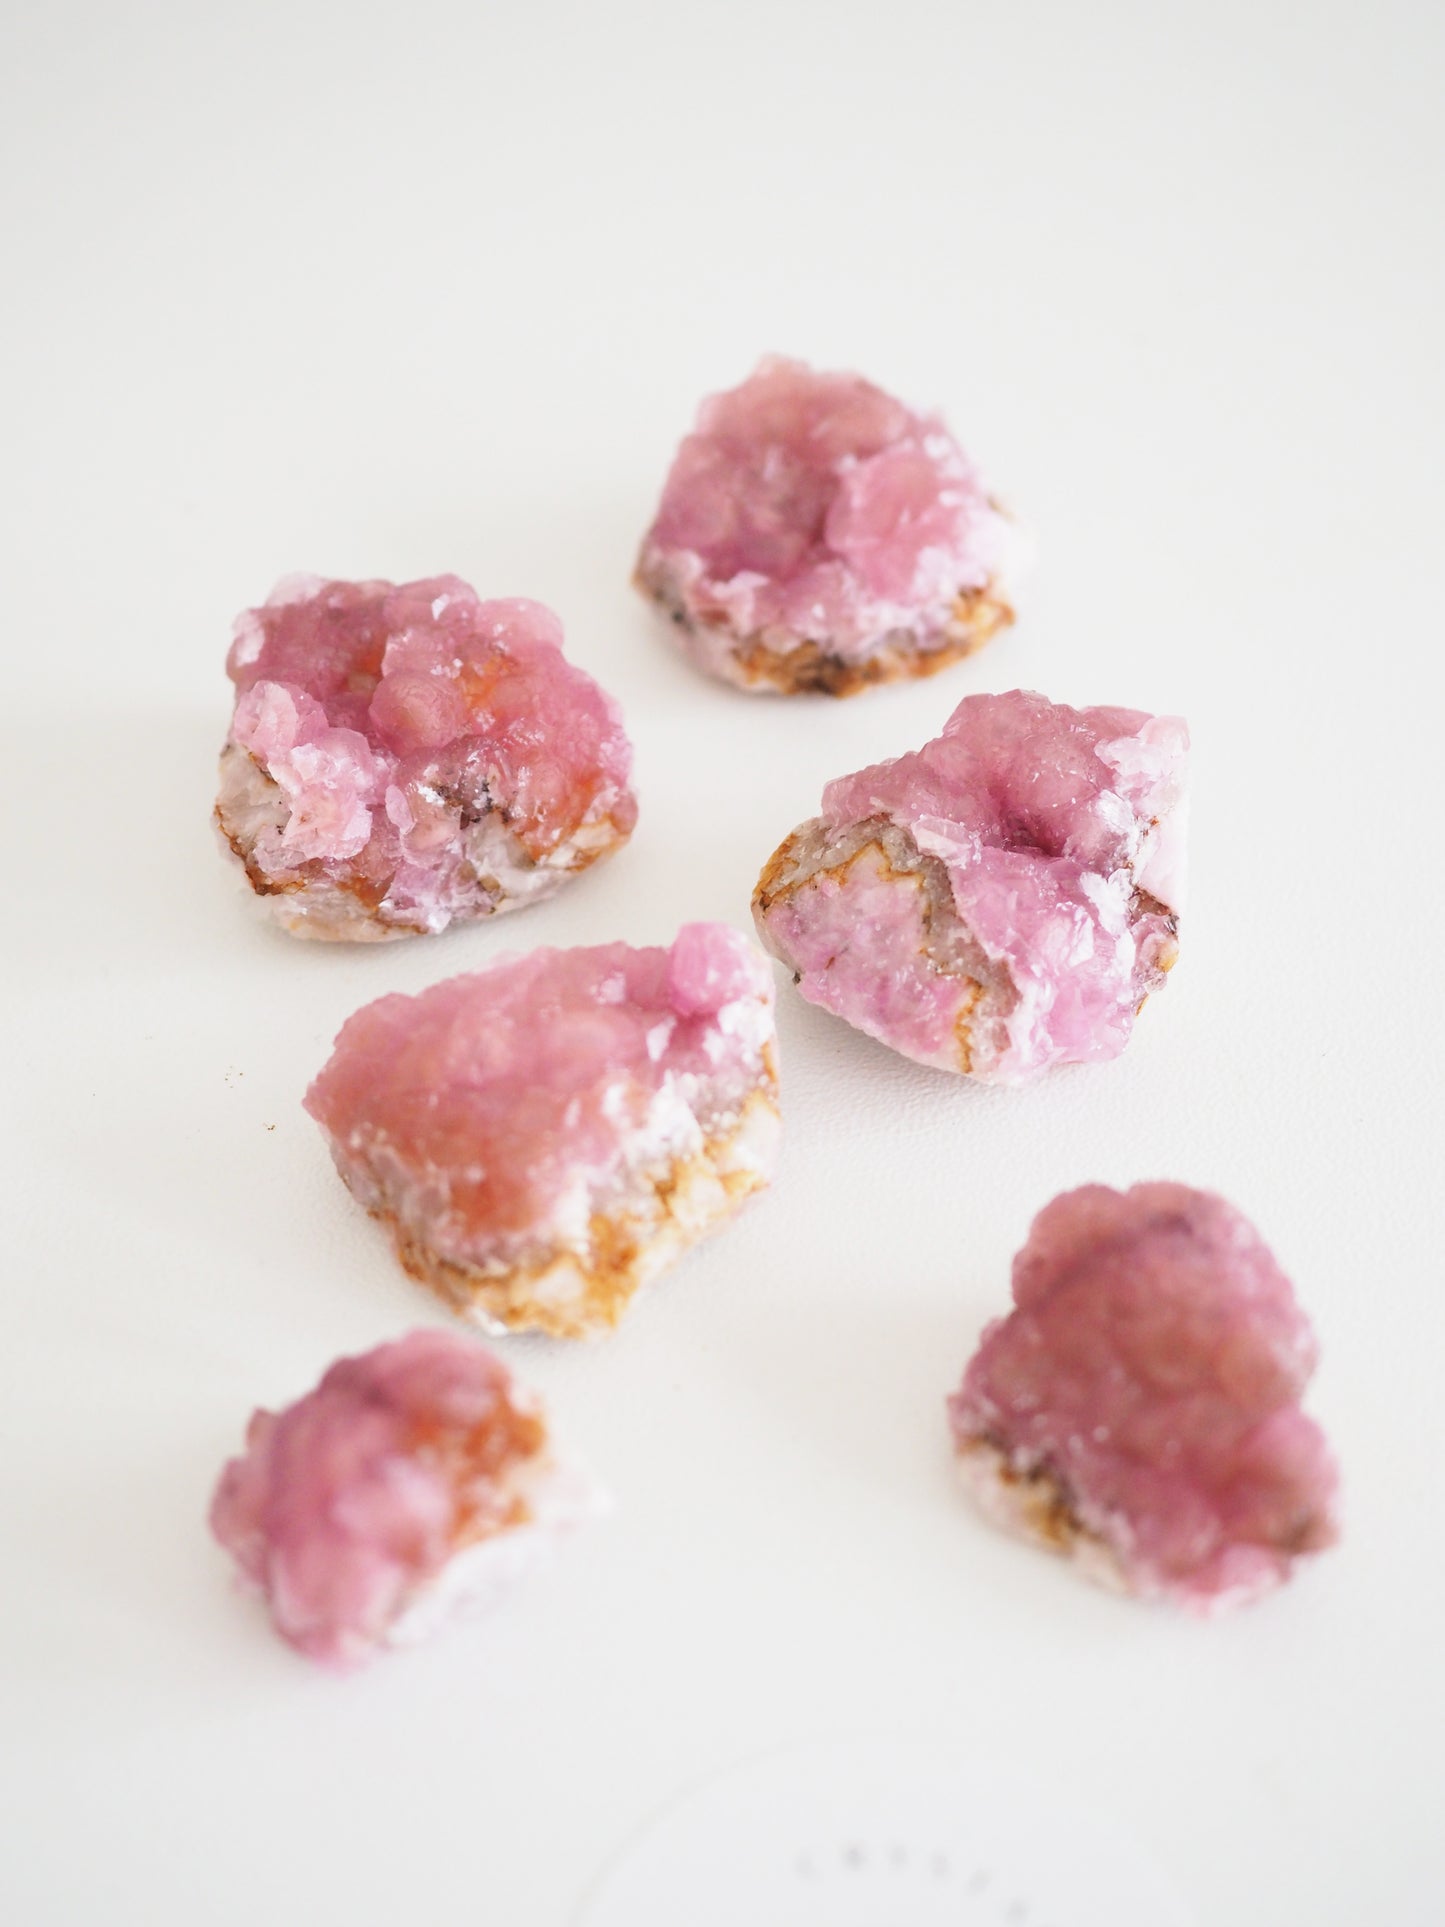 Pink Cobalto Calcite Specimen ca. 2-3cm - aus Marokko